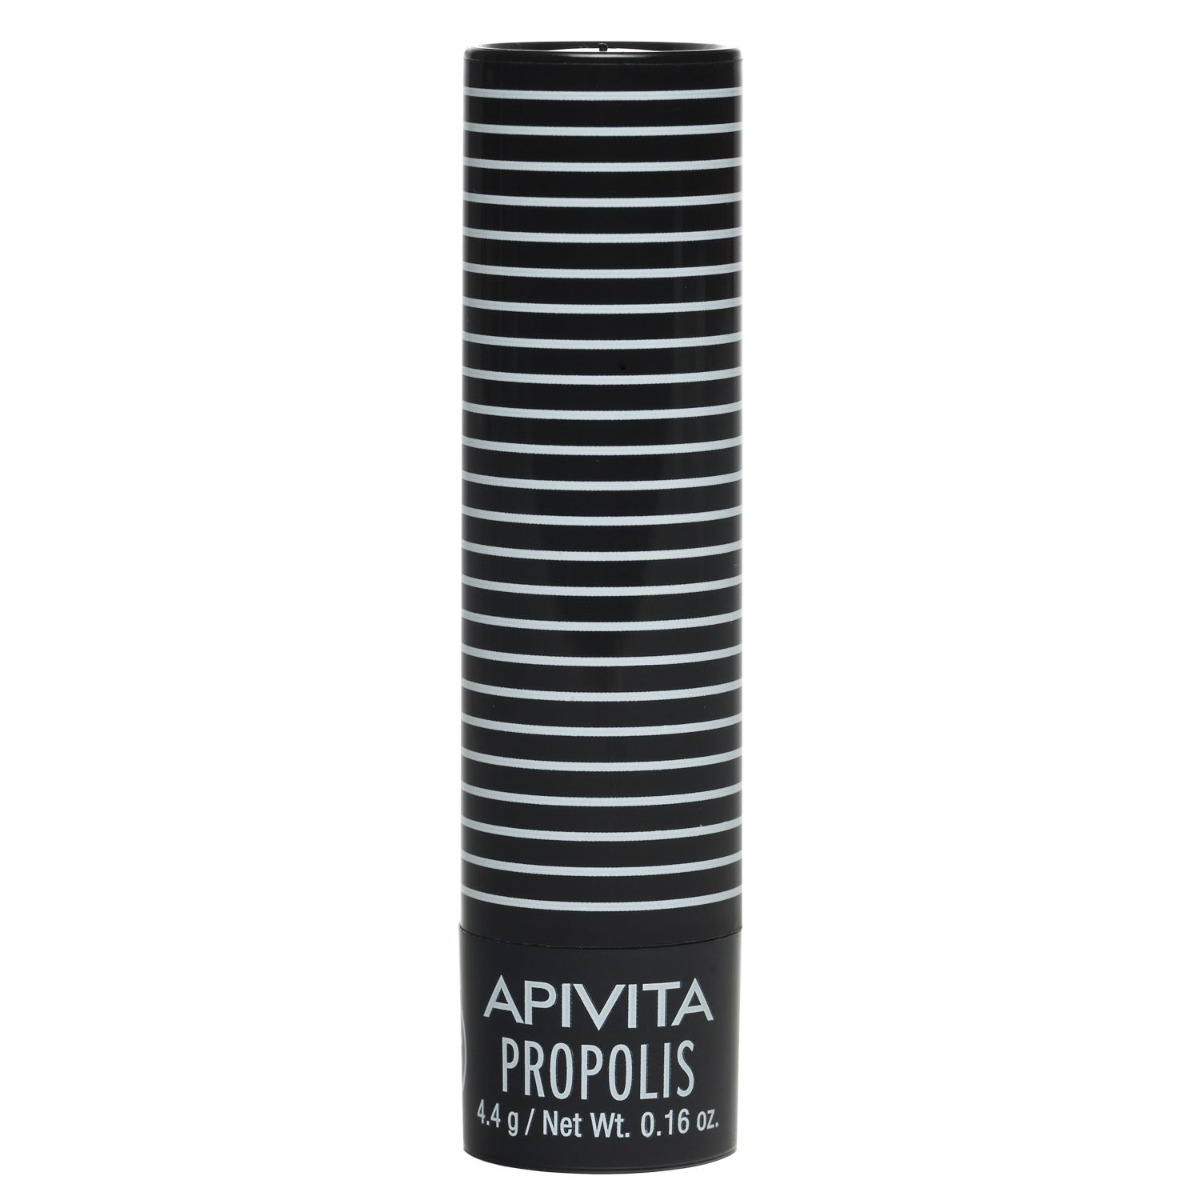 APIVITA Lip Care Propolis balzám na rty s propolisem 4